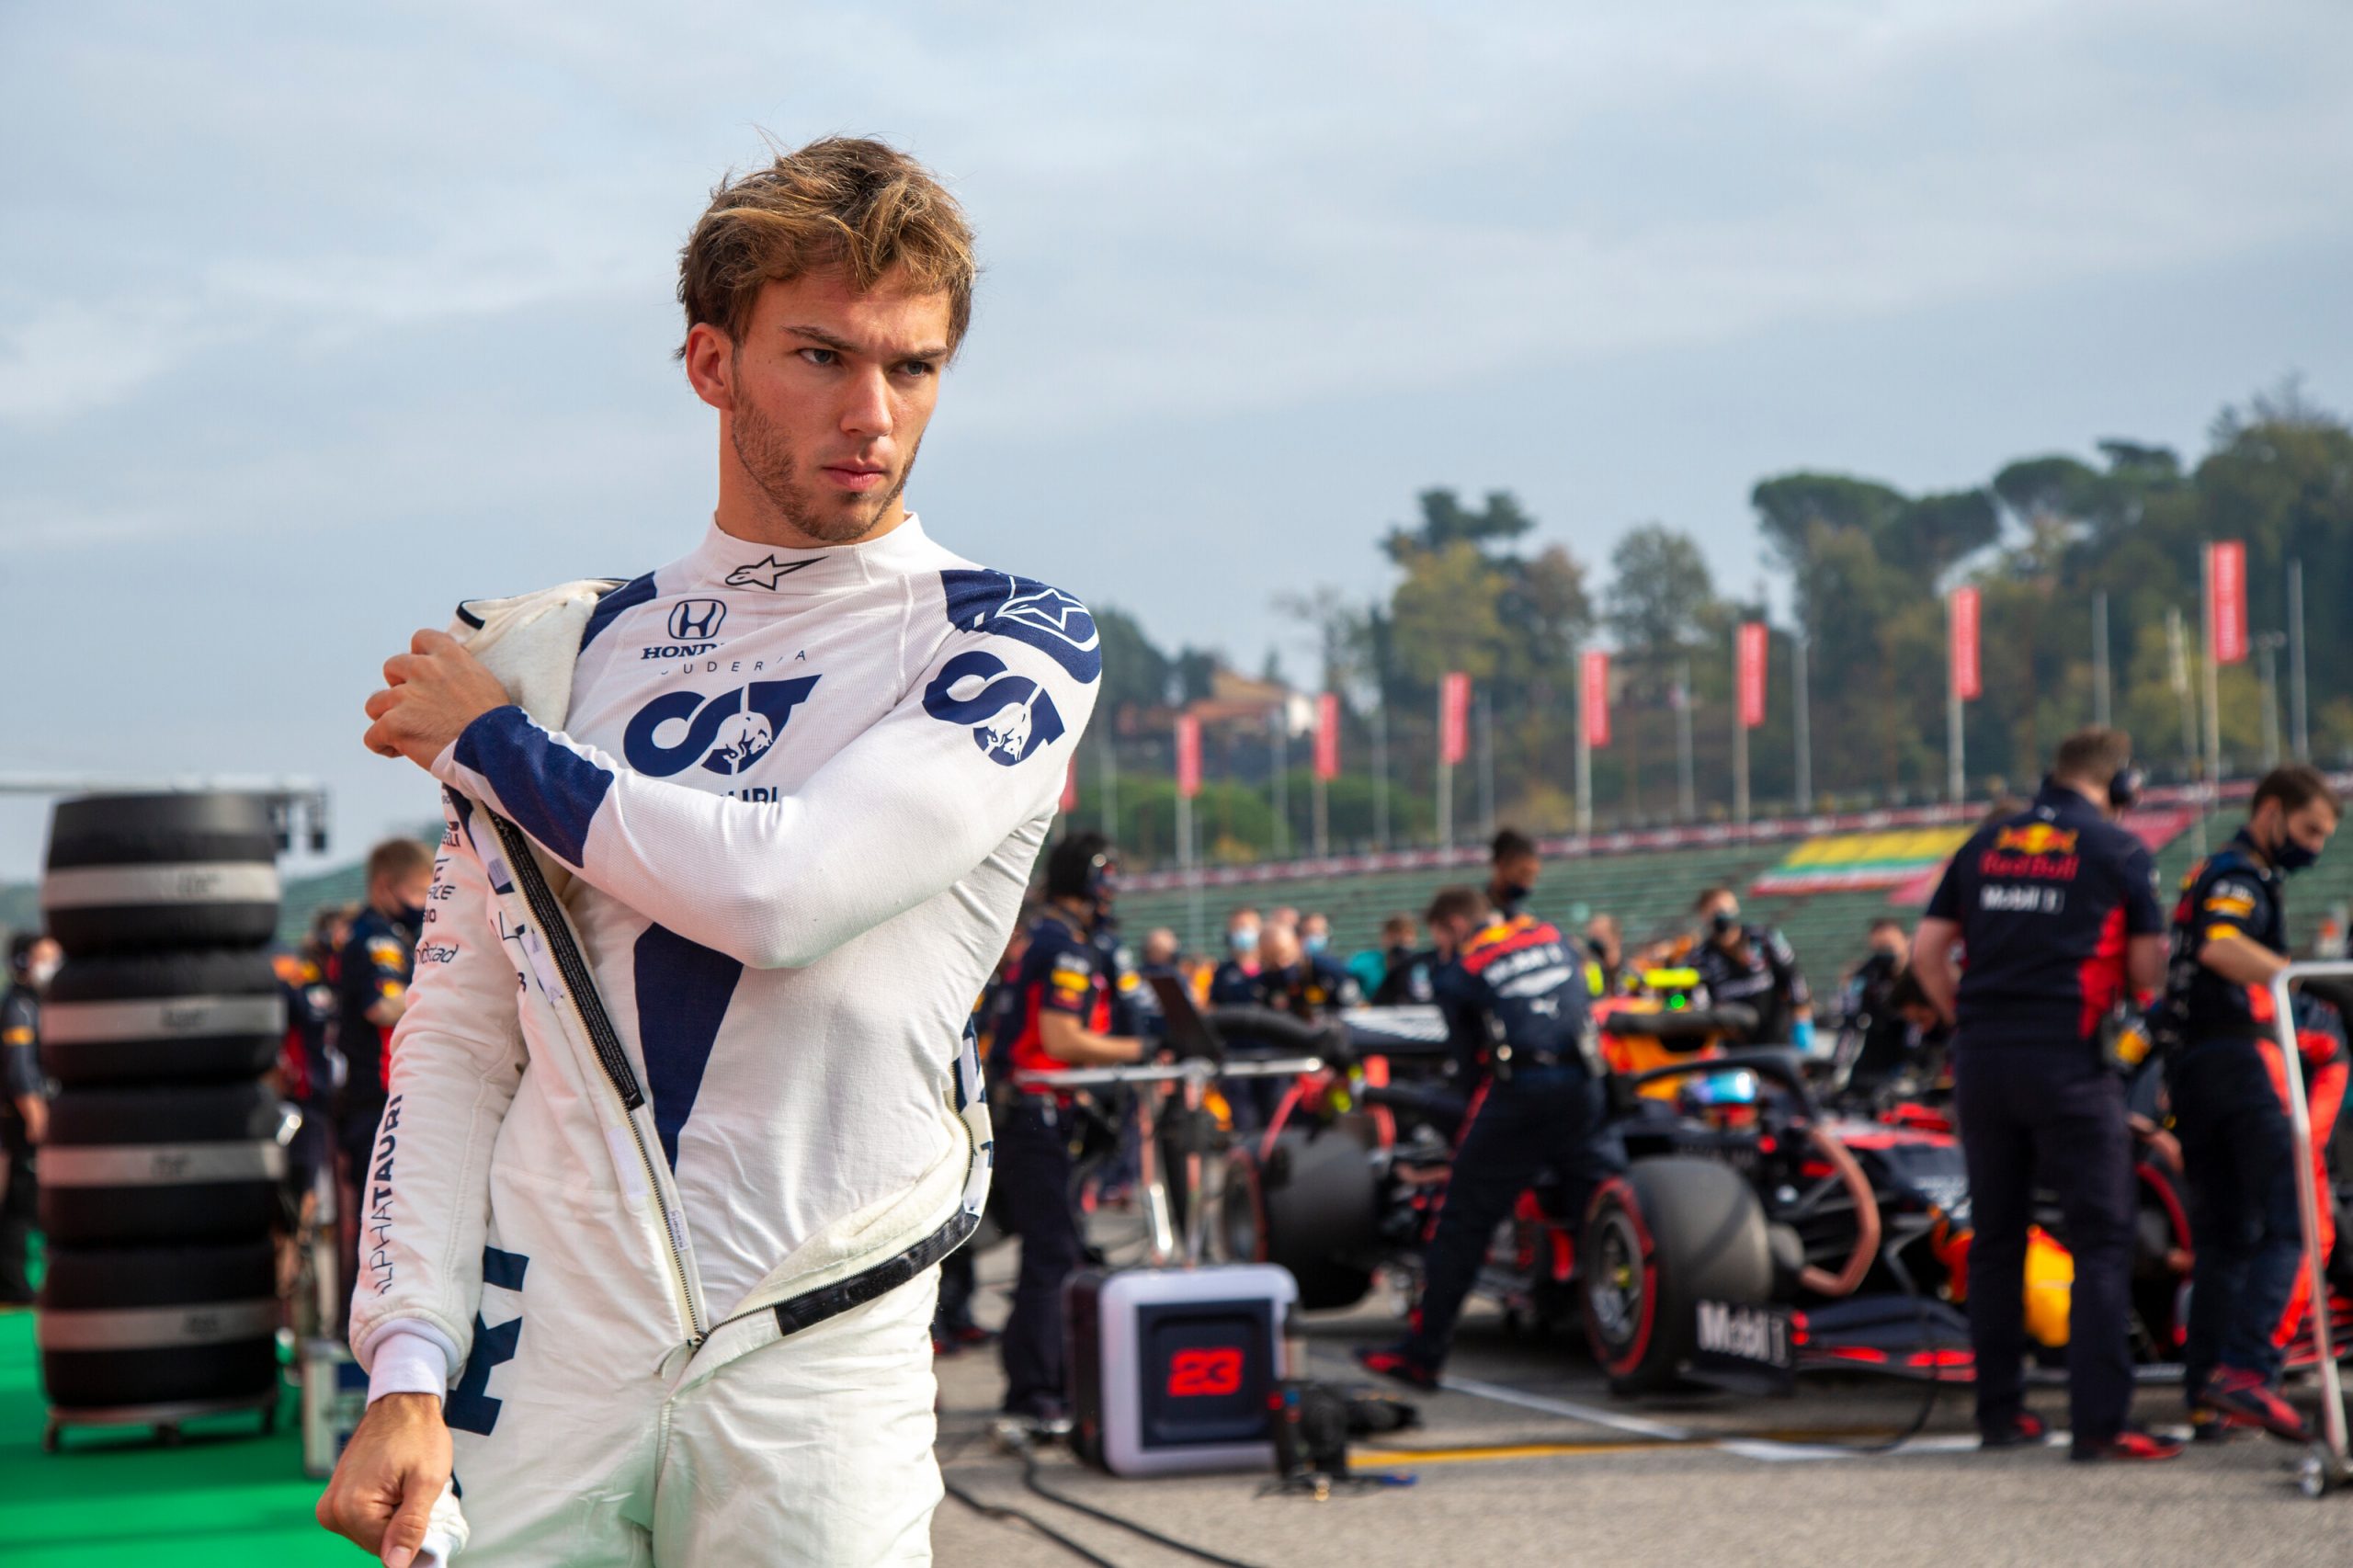 F1 - Pierre Gasly a tout pour devenir "un pilote à succès" en F1 selon Franz Tost